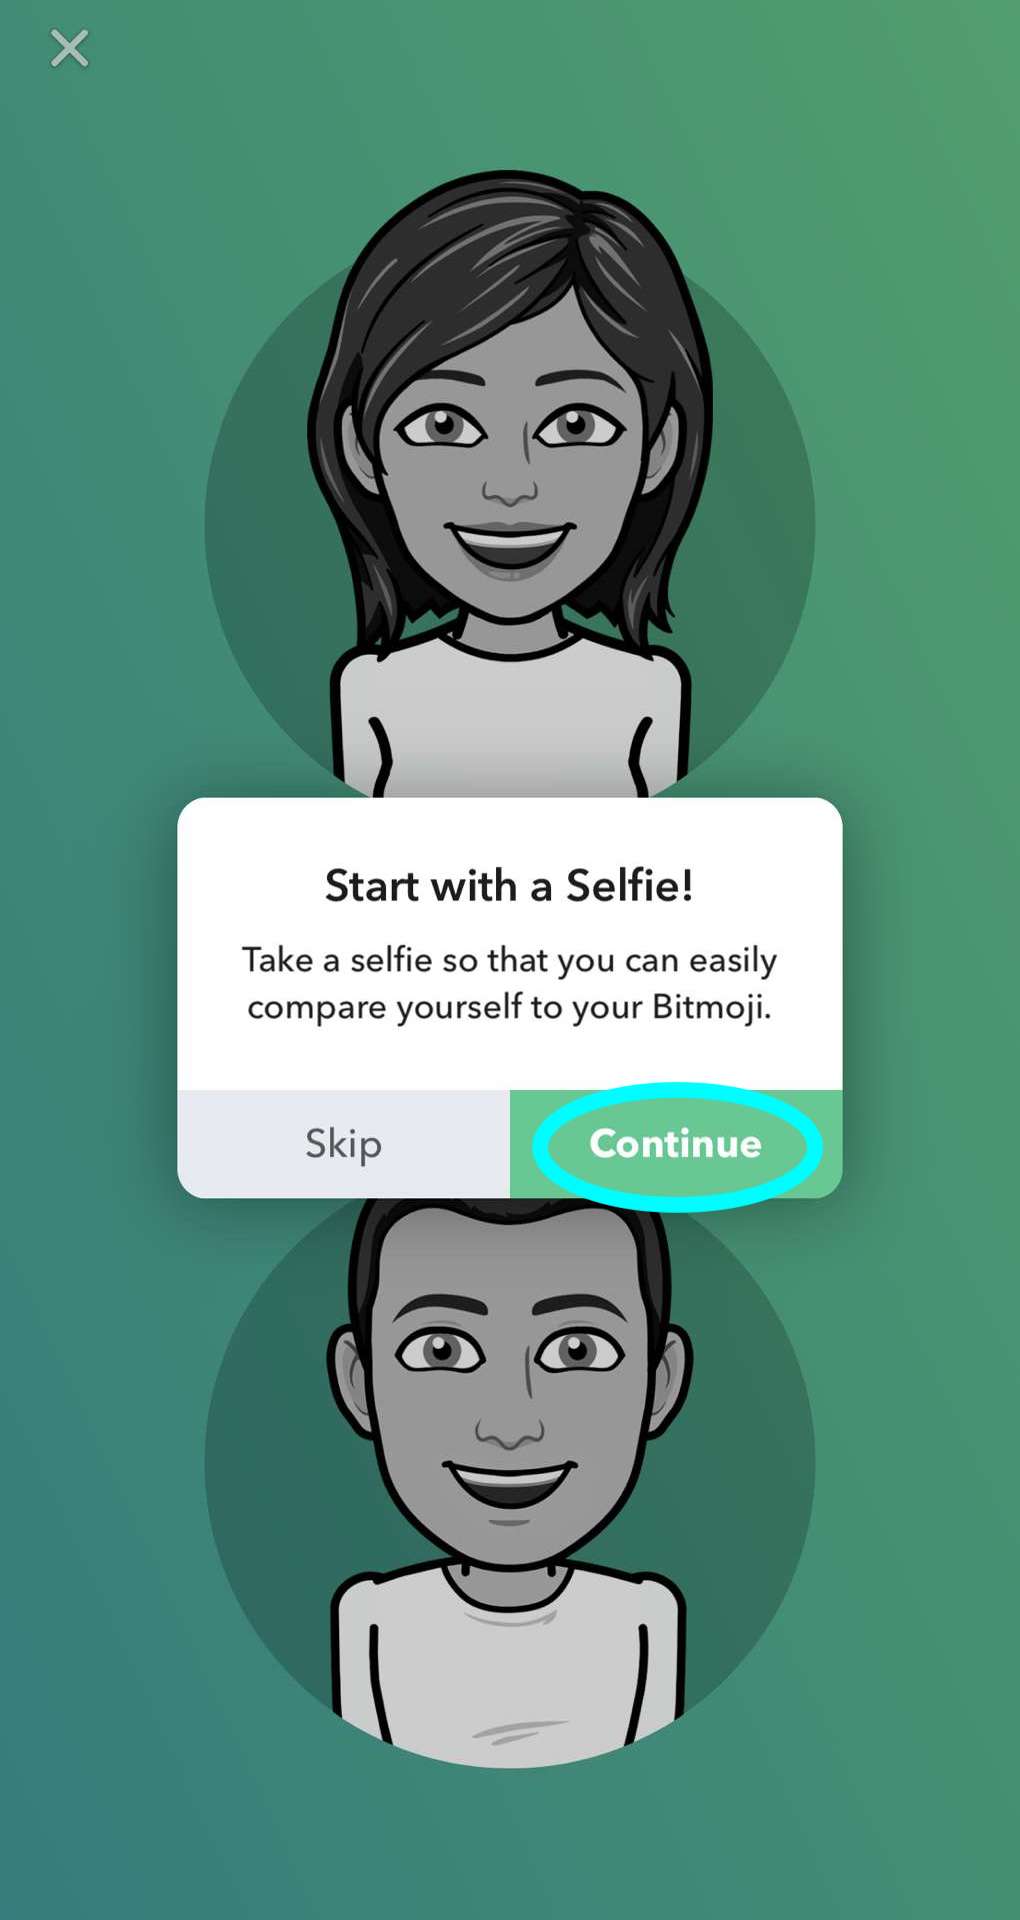 Ventana emergente que indica al usuario que comience a crear el avatar a partir de una selfie, el botón de continuar con una selfie aparece destacado